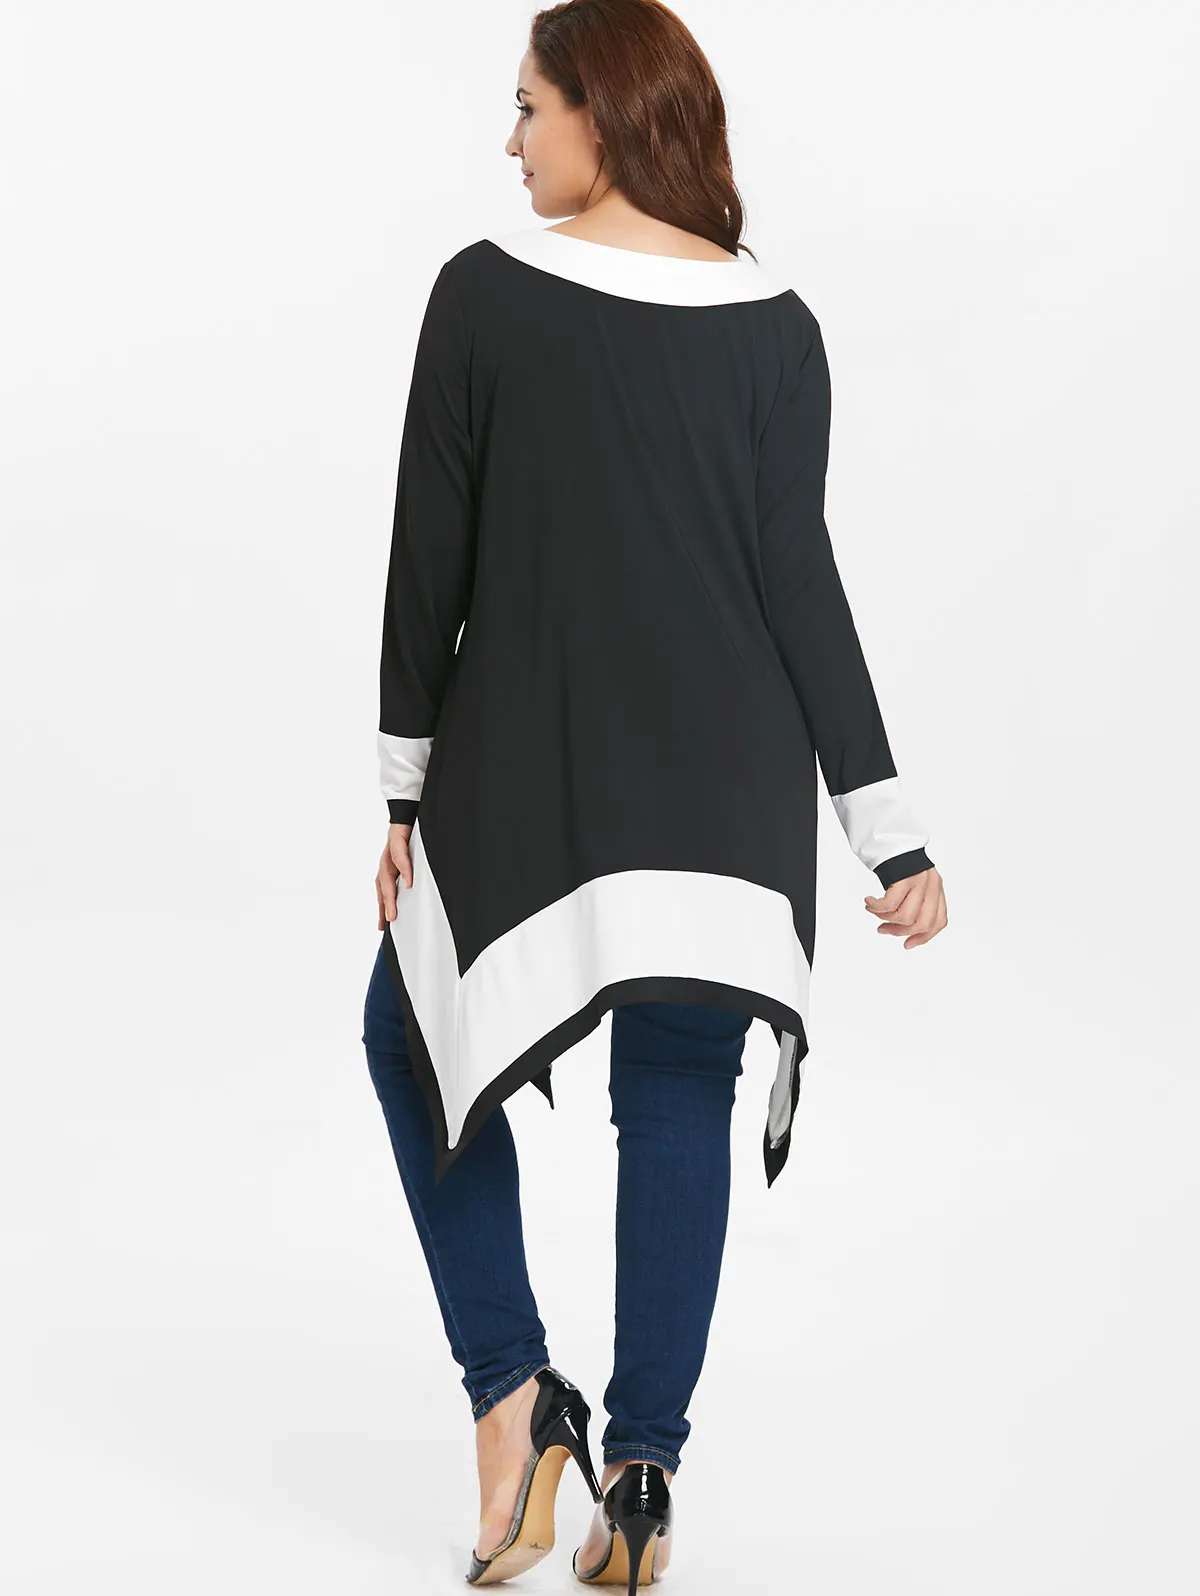 Wipalo размера плюс 5XL контрастный длинный платок с рукавами футболка Женская Осенняя Туника Футболка женская футболка Топ Женская одежда большого размера